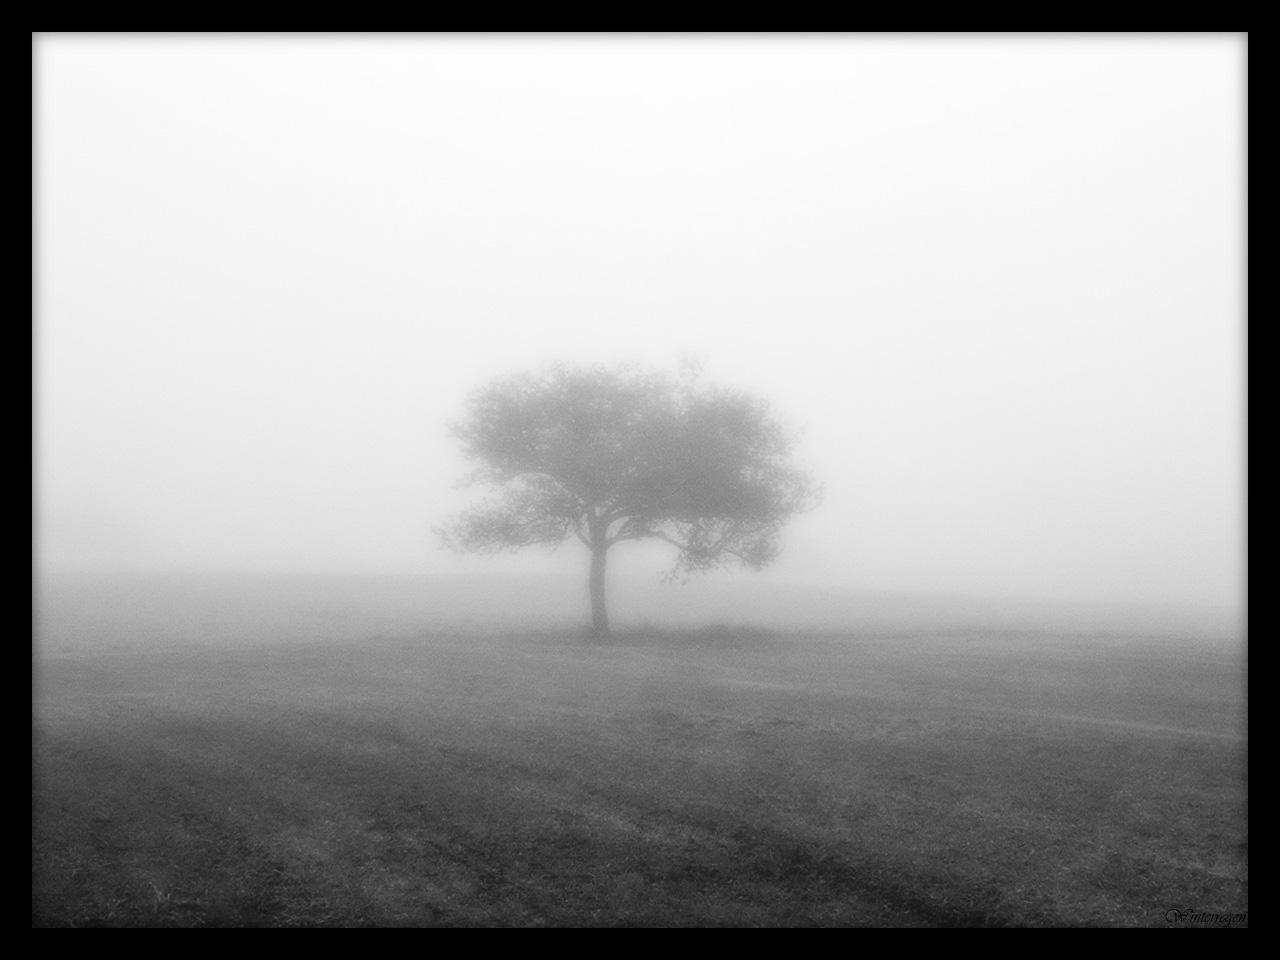 The Silence of Loneliness by Winterregen